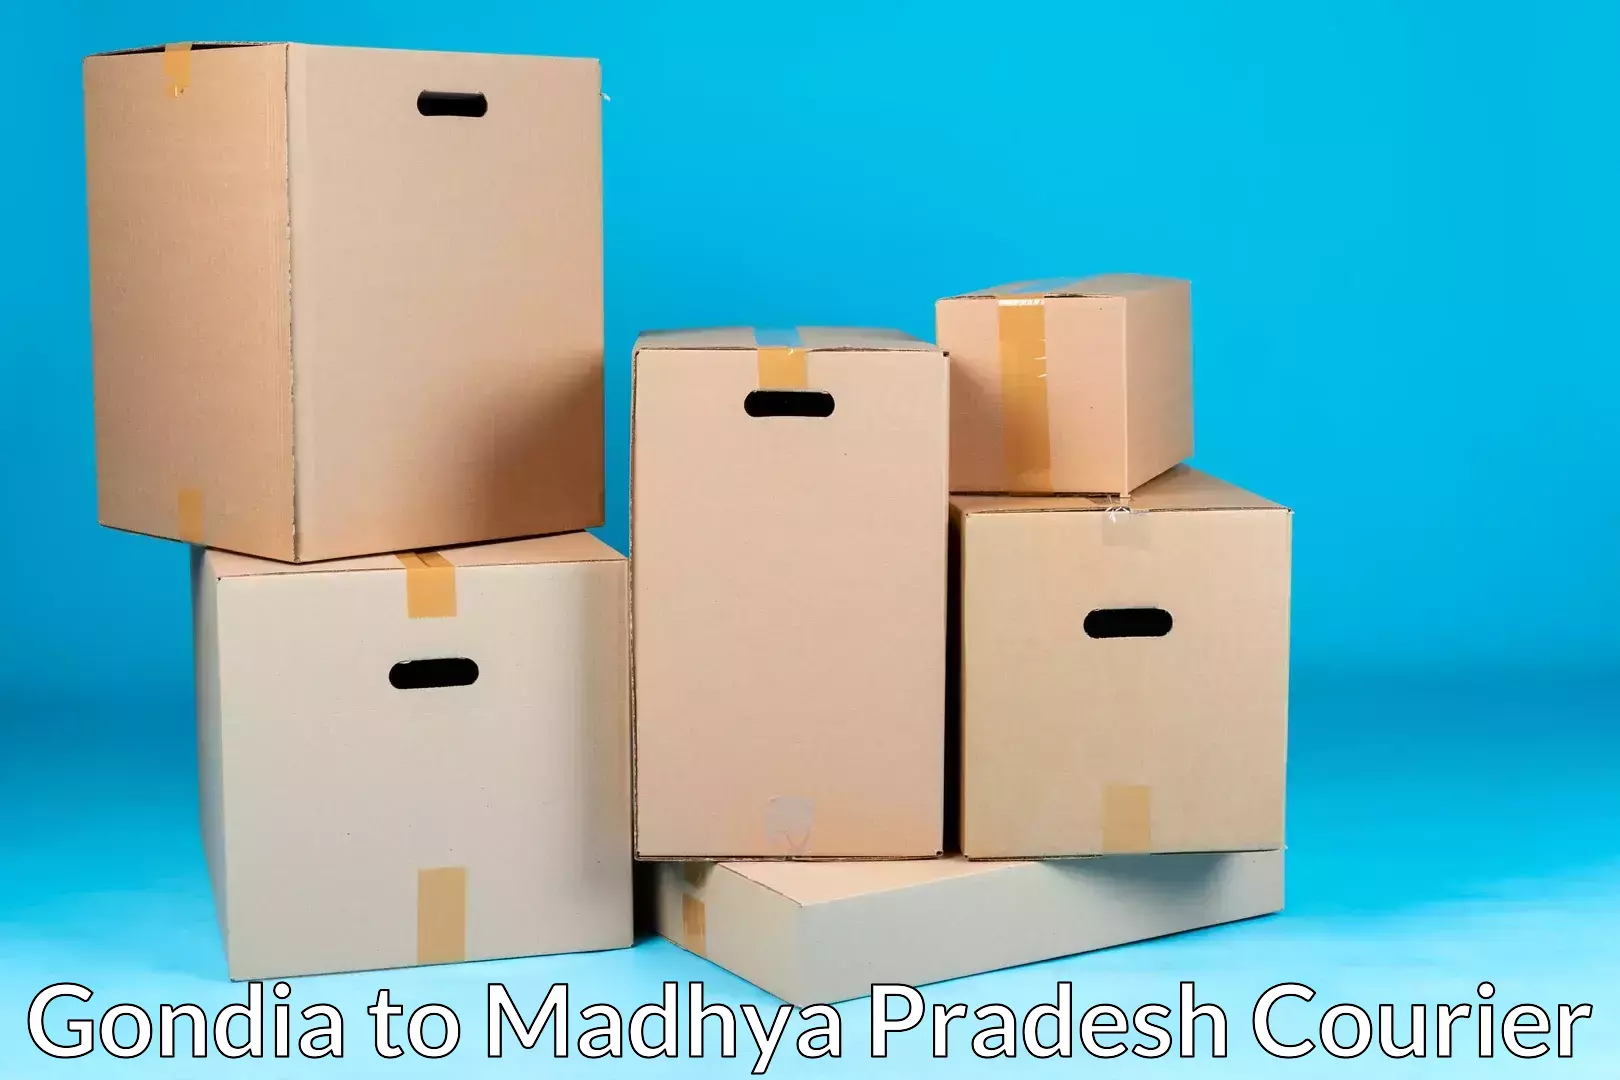 Furniture moving experts Gondia to Amarwara